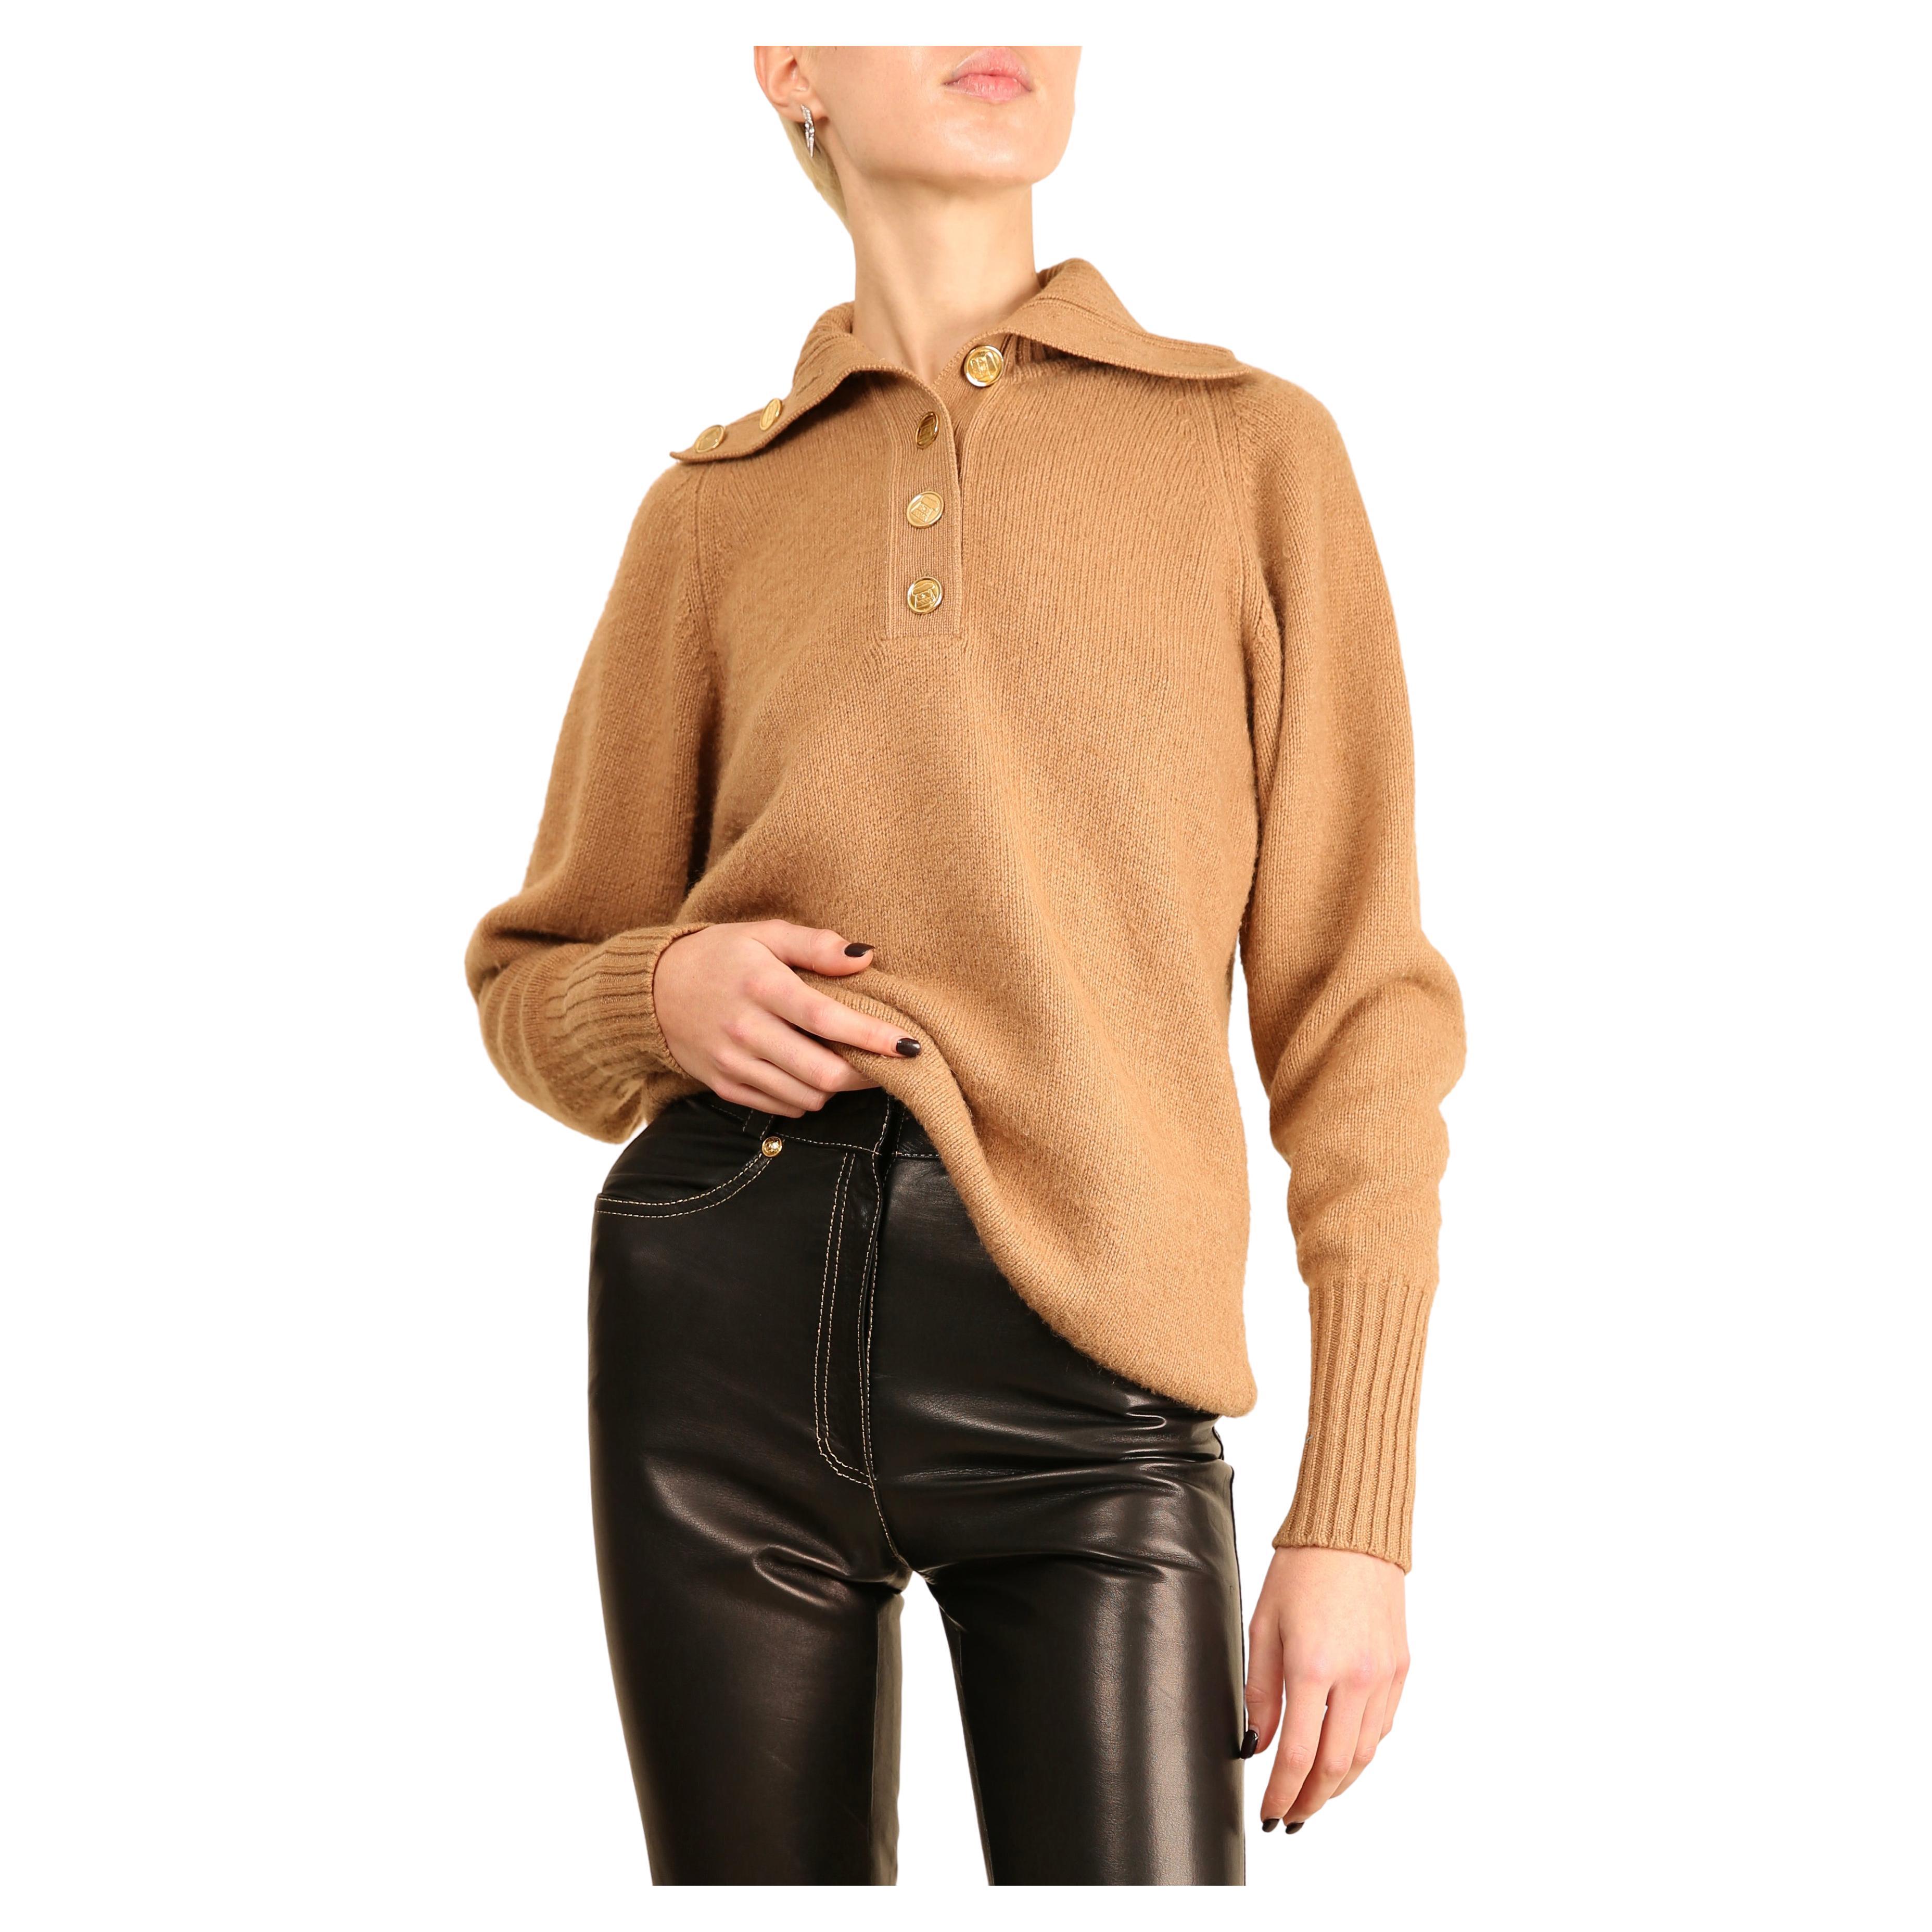 Chanel vtg tan camel beige turtleneck gold logo button cashmere dress sweater 